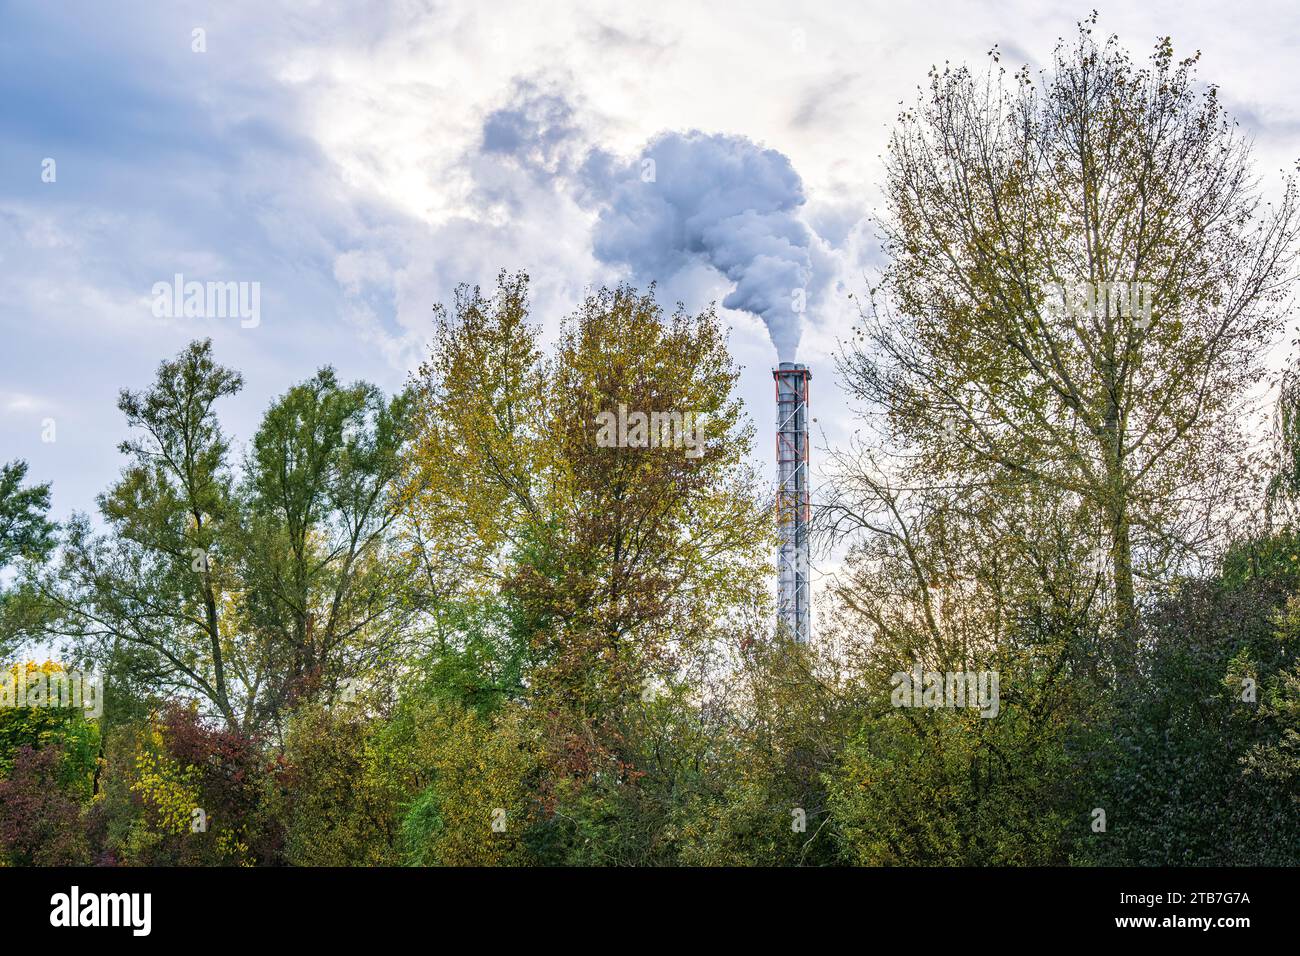 Immagine simbolica, emissione di fumi di scarico dal camino di un impianto industriale nell'ambiente. Foto Stock